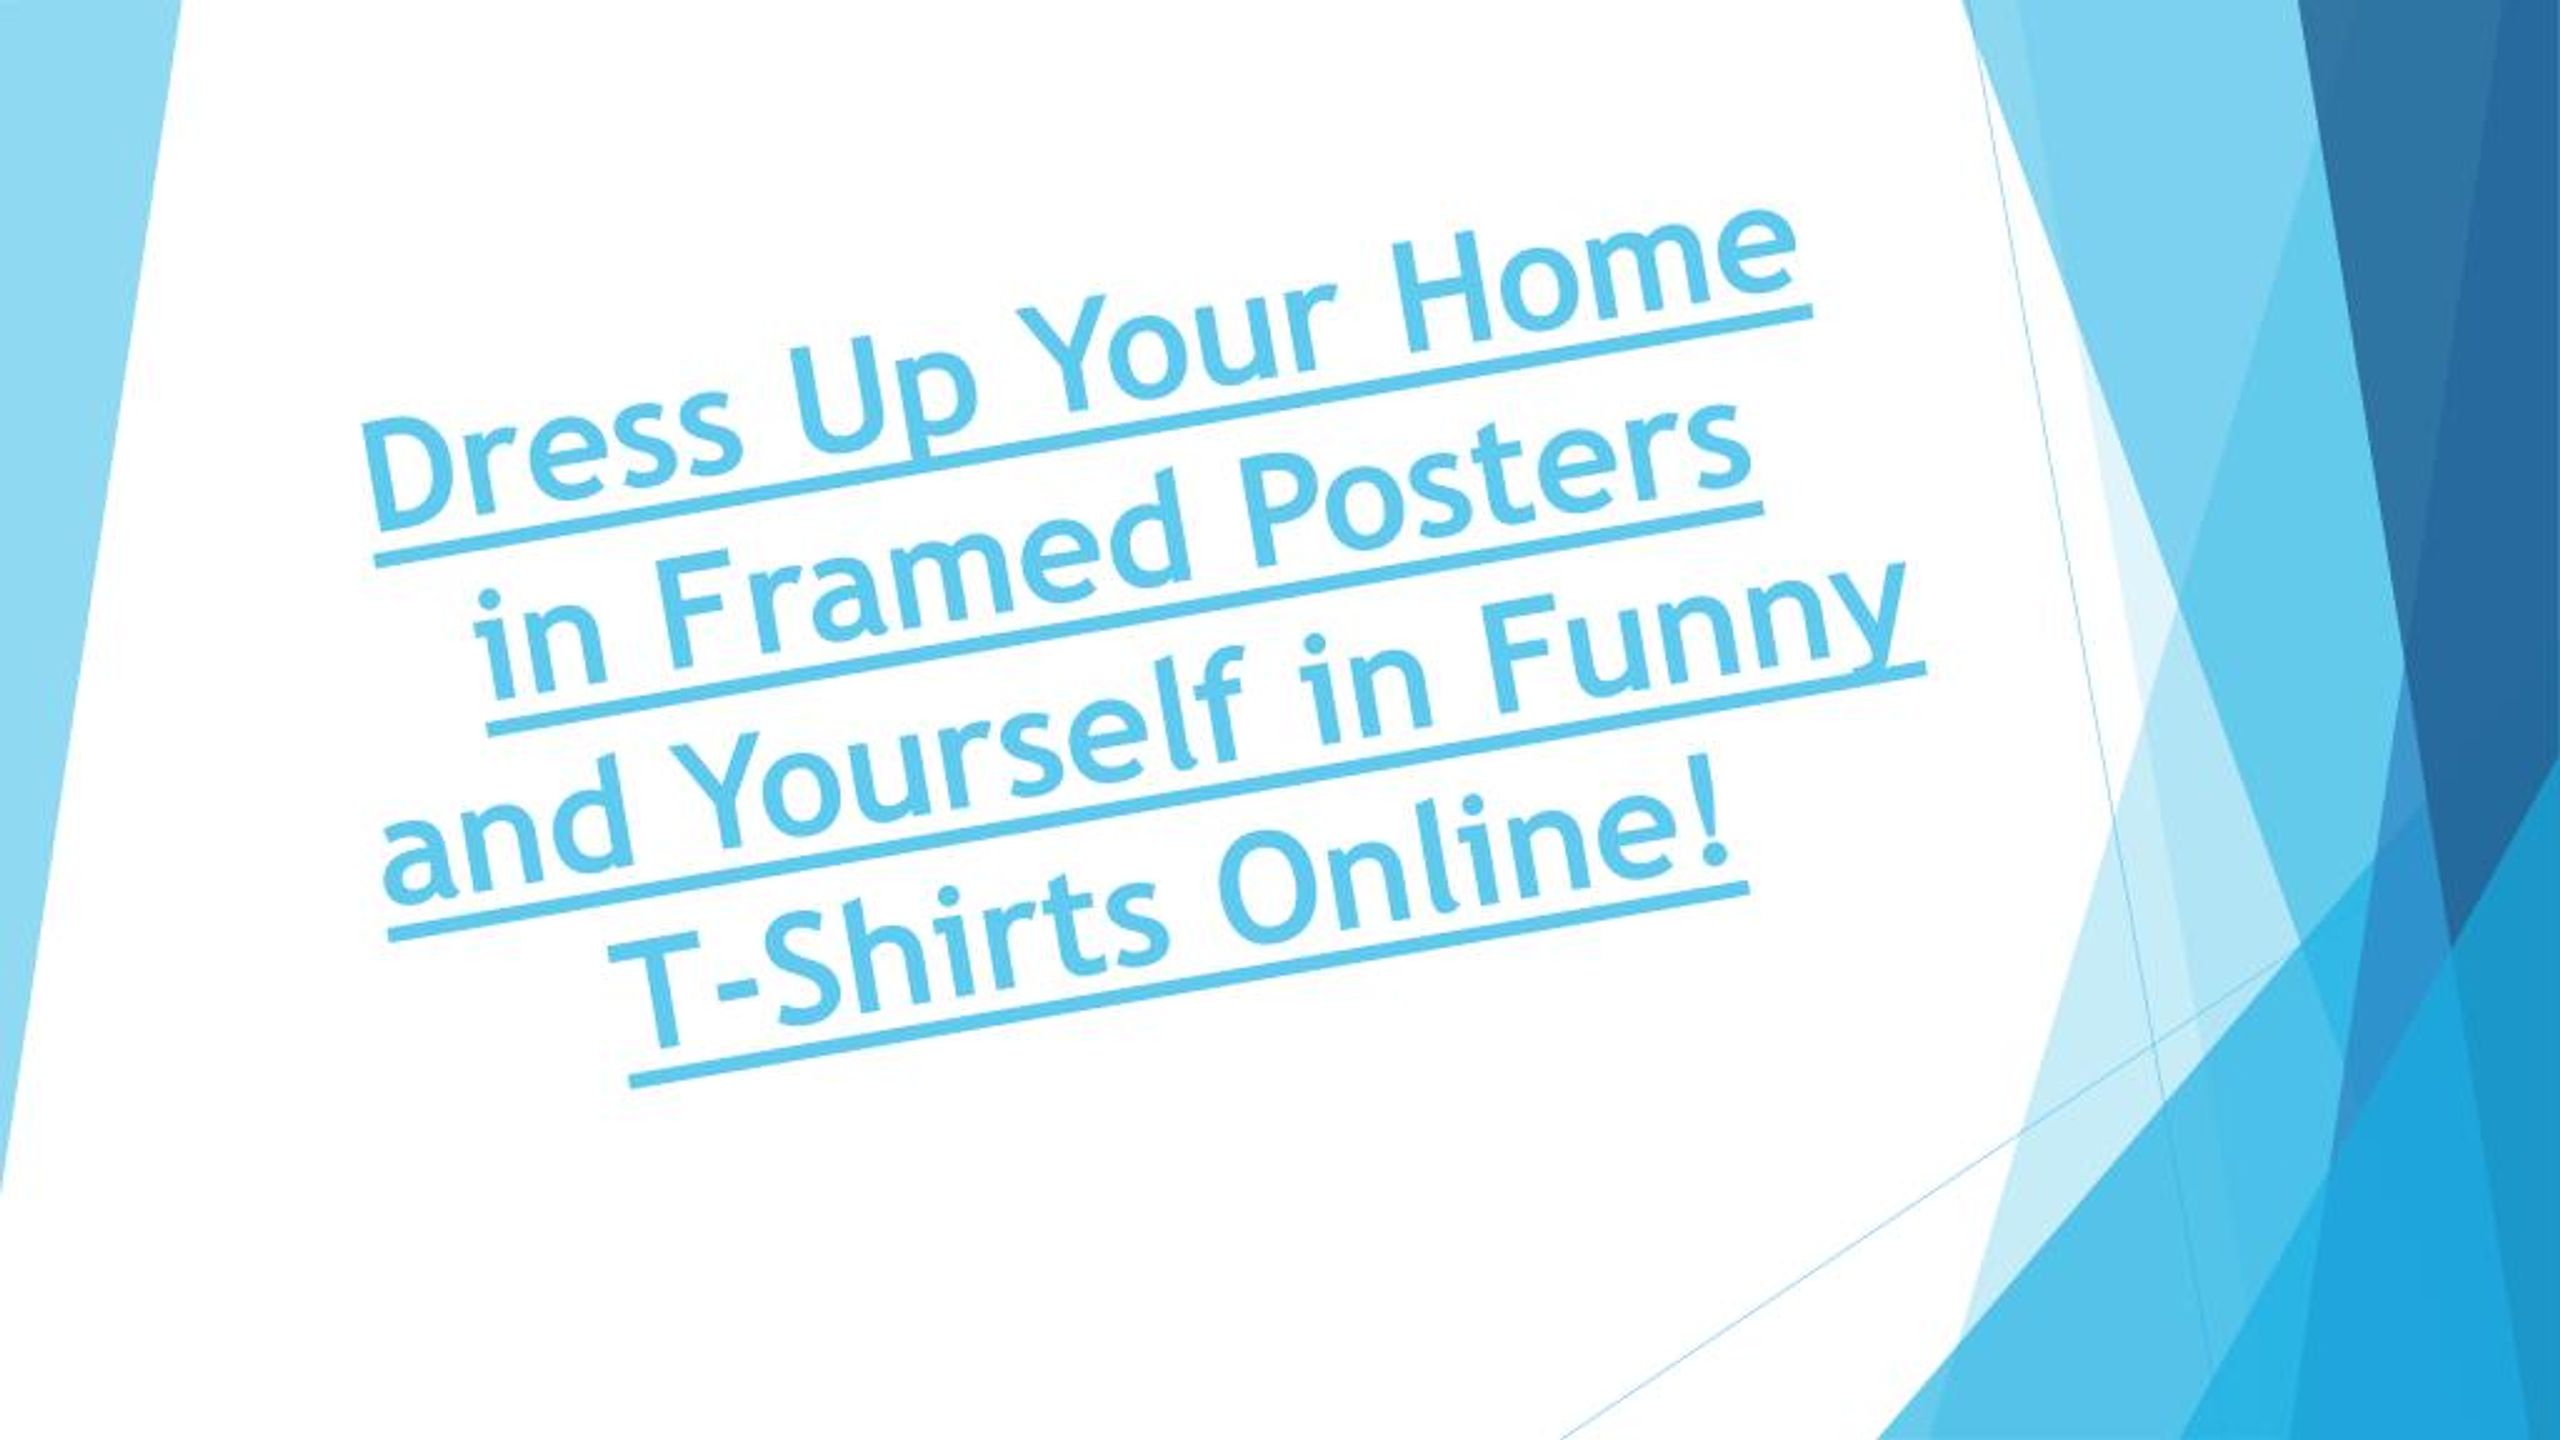 framed posters online